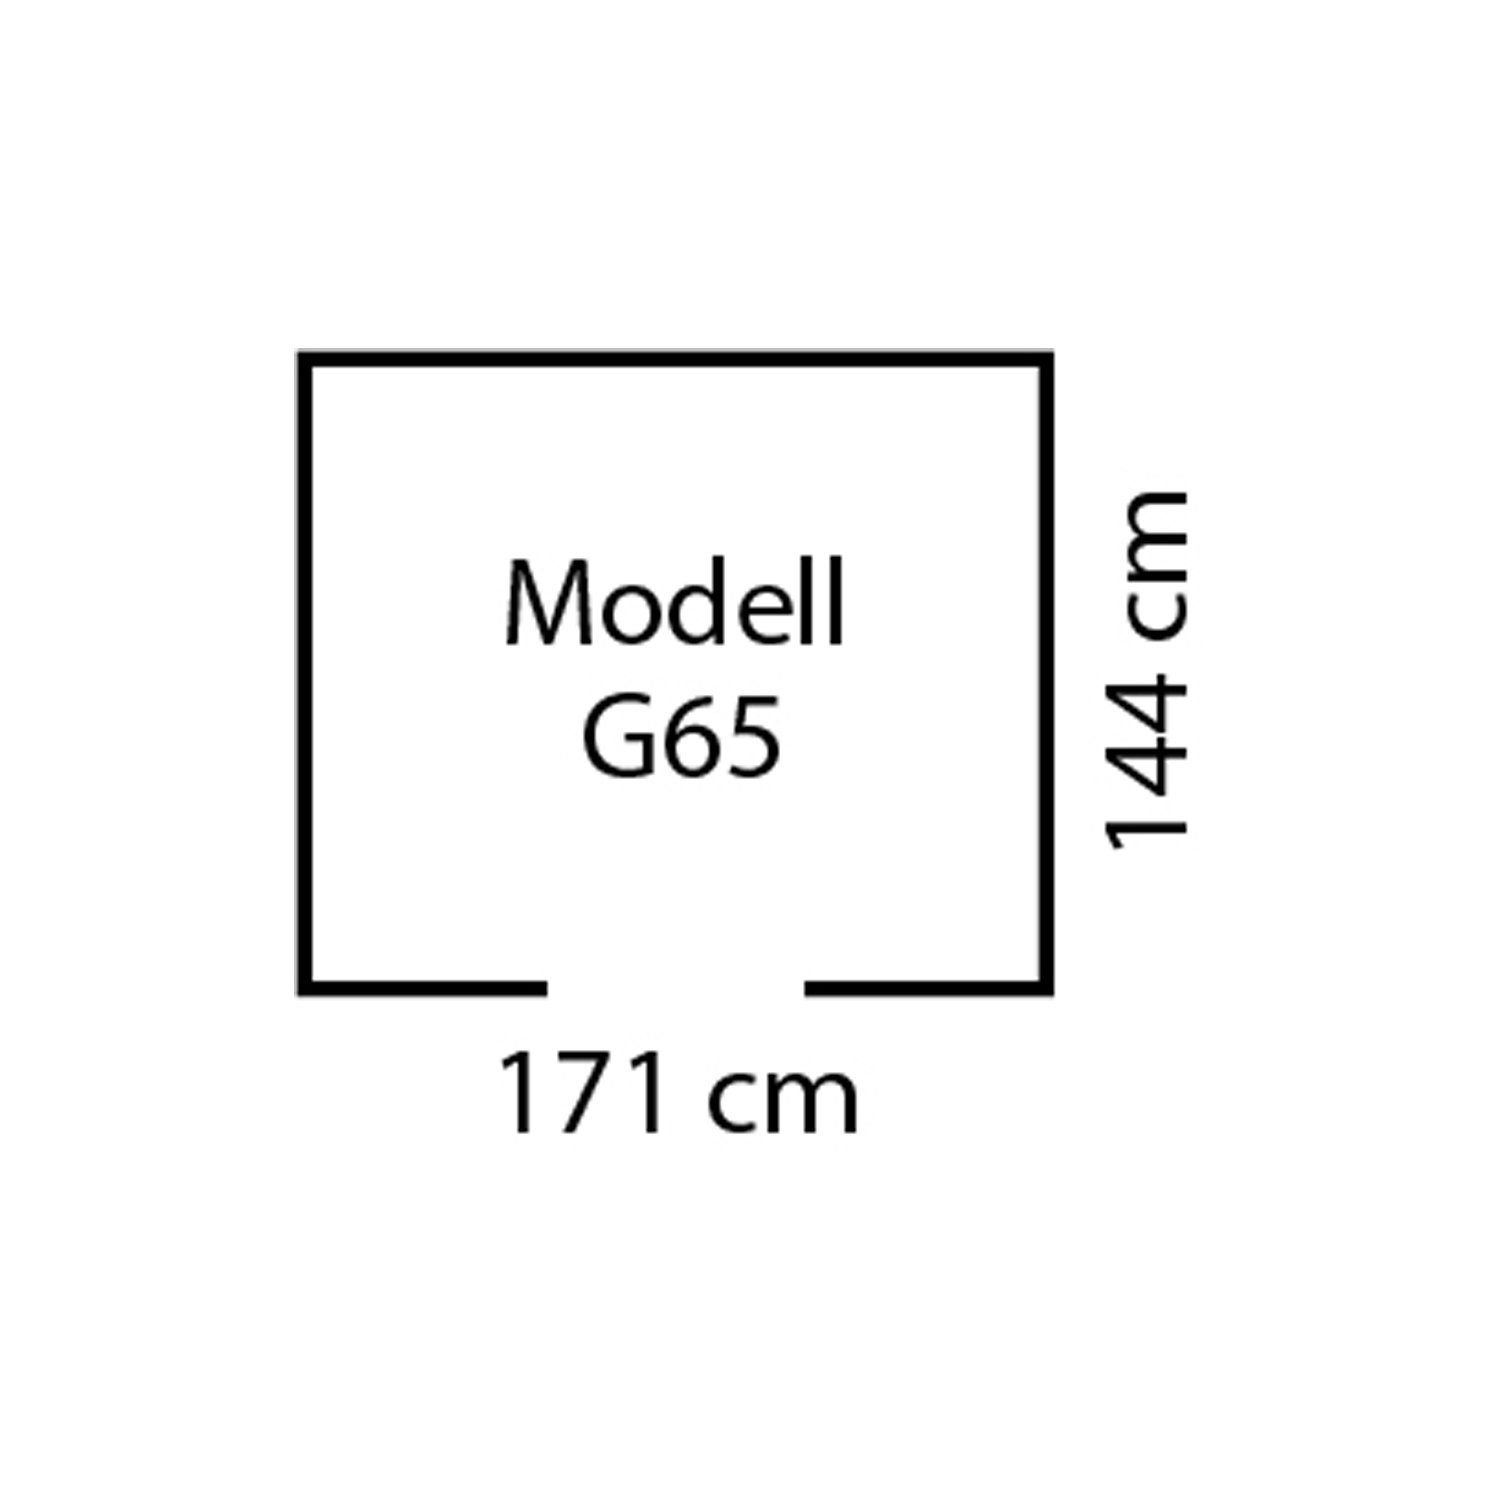 Globel Industries Gerätehaus Metall-Gartenmanager "Dream m) metallic (2,83 65" silber